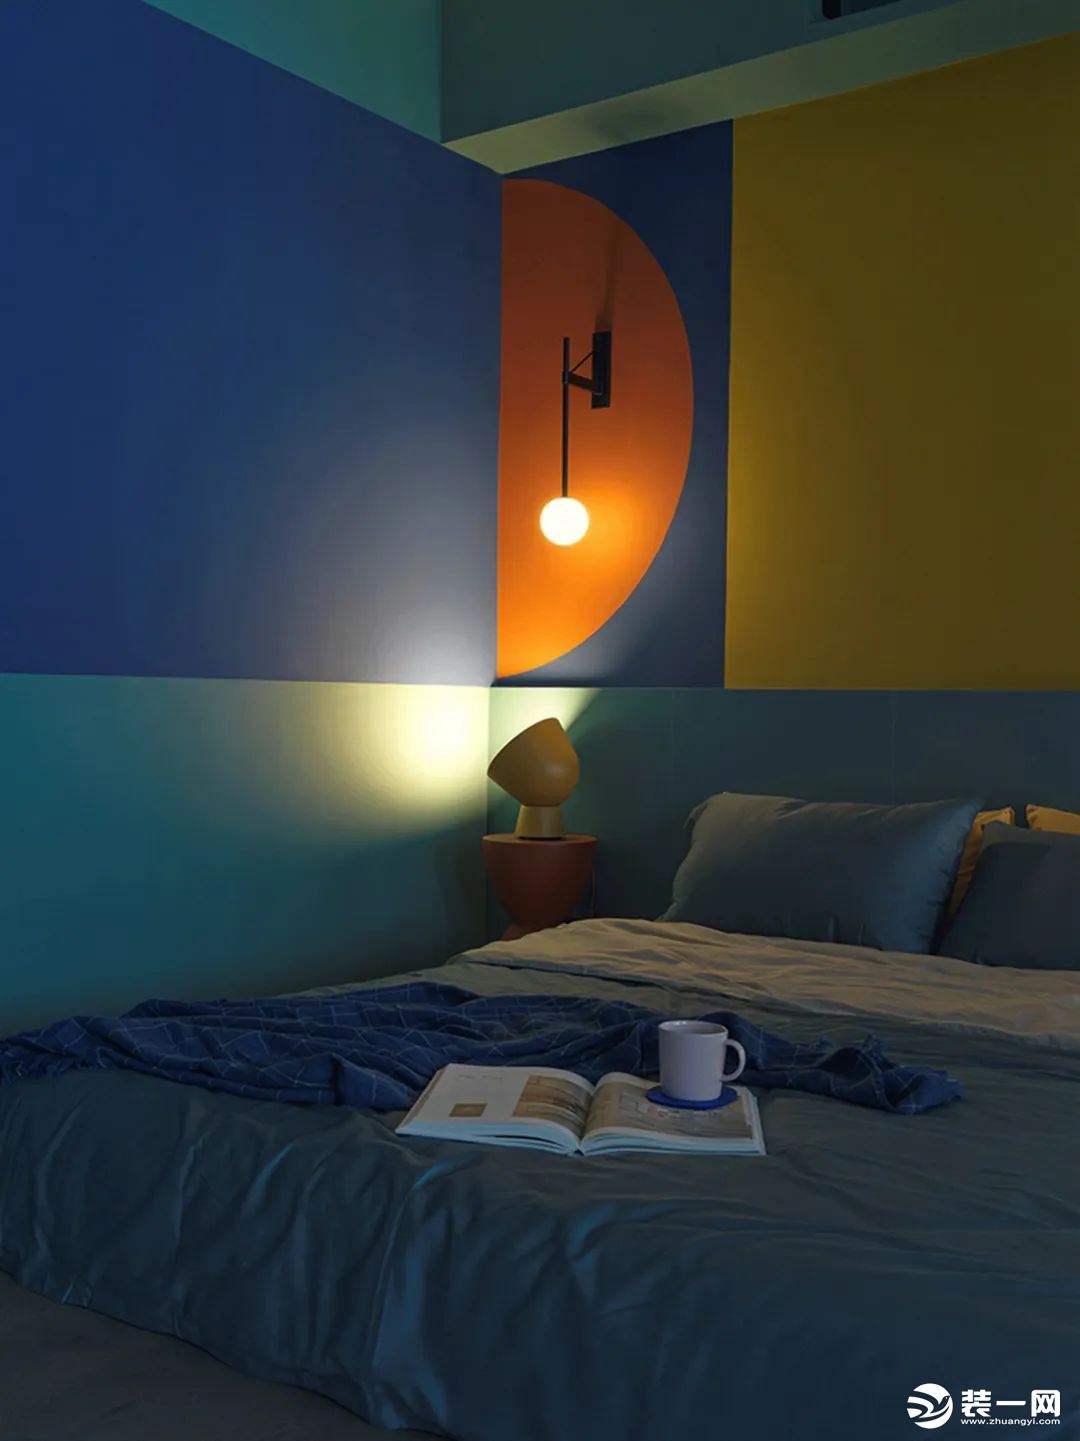 角落位置是一个陀螺造型的小床头柜，摆上一个黄色的装饰床头灯，与墙面大胆的配色相互呼应，让空间显得跳跃